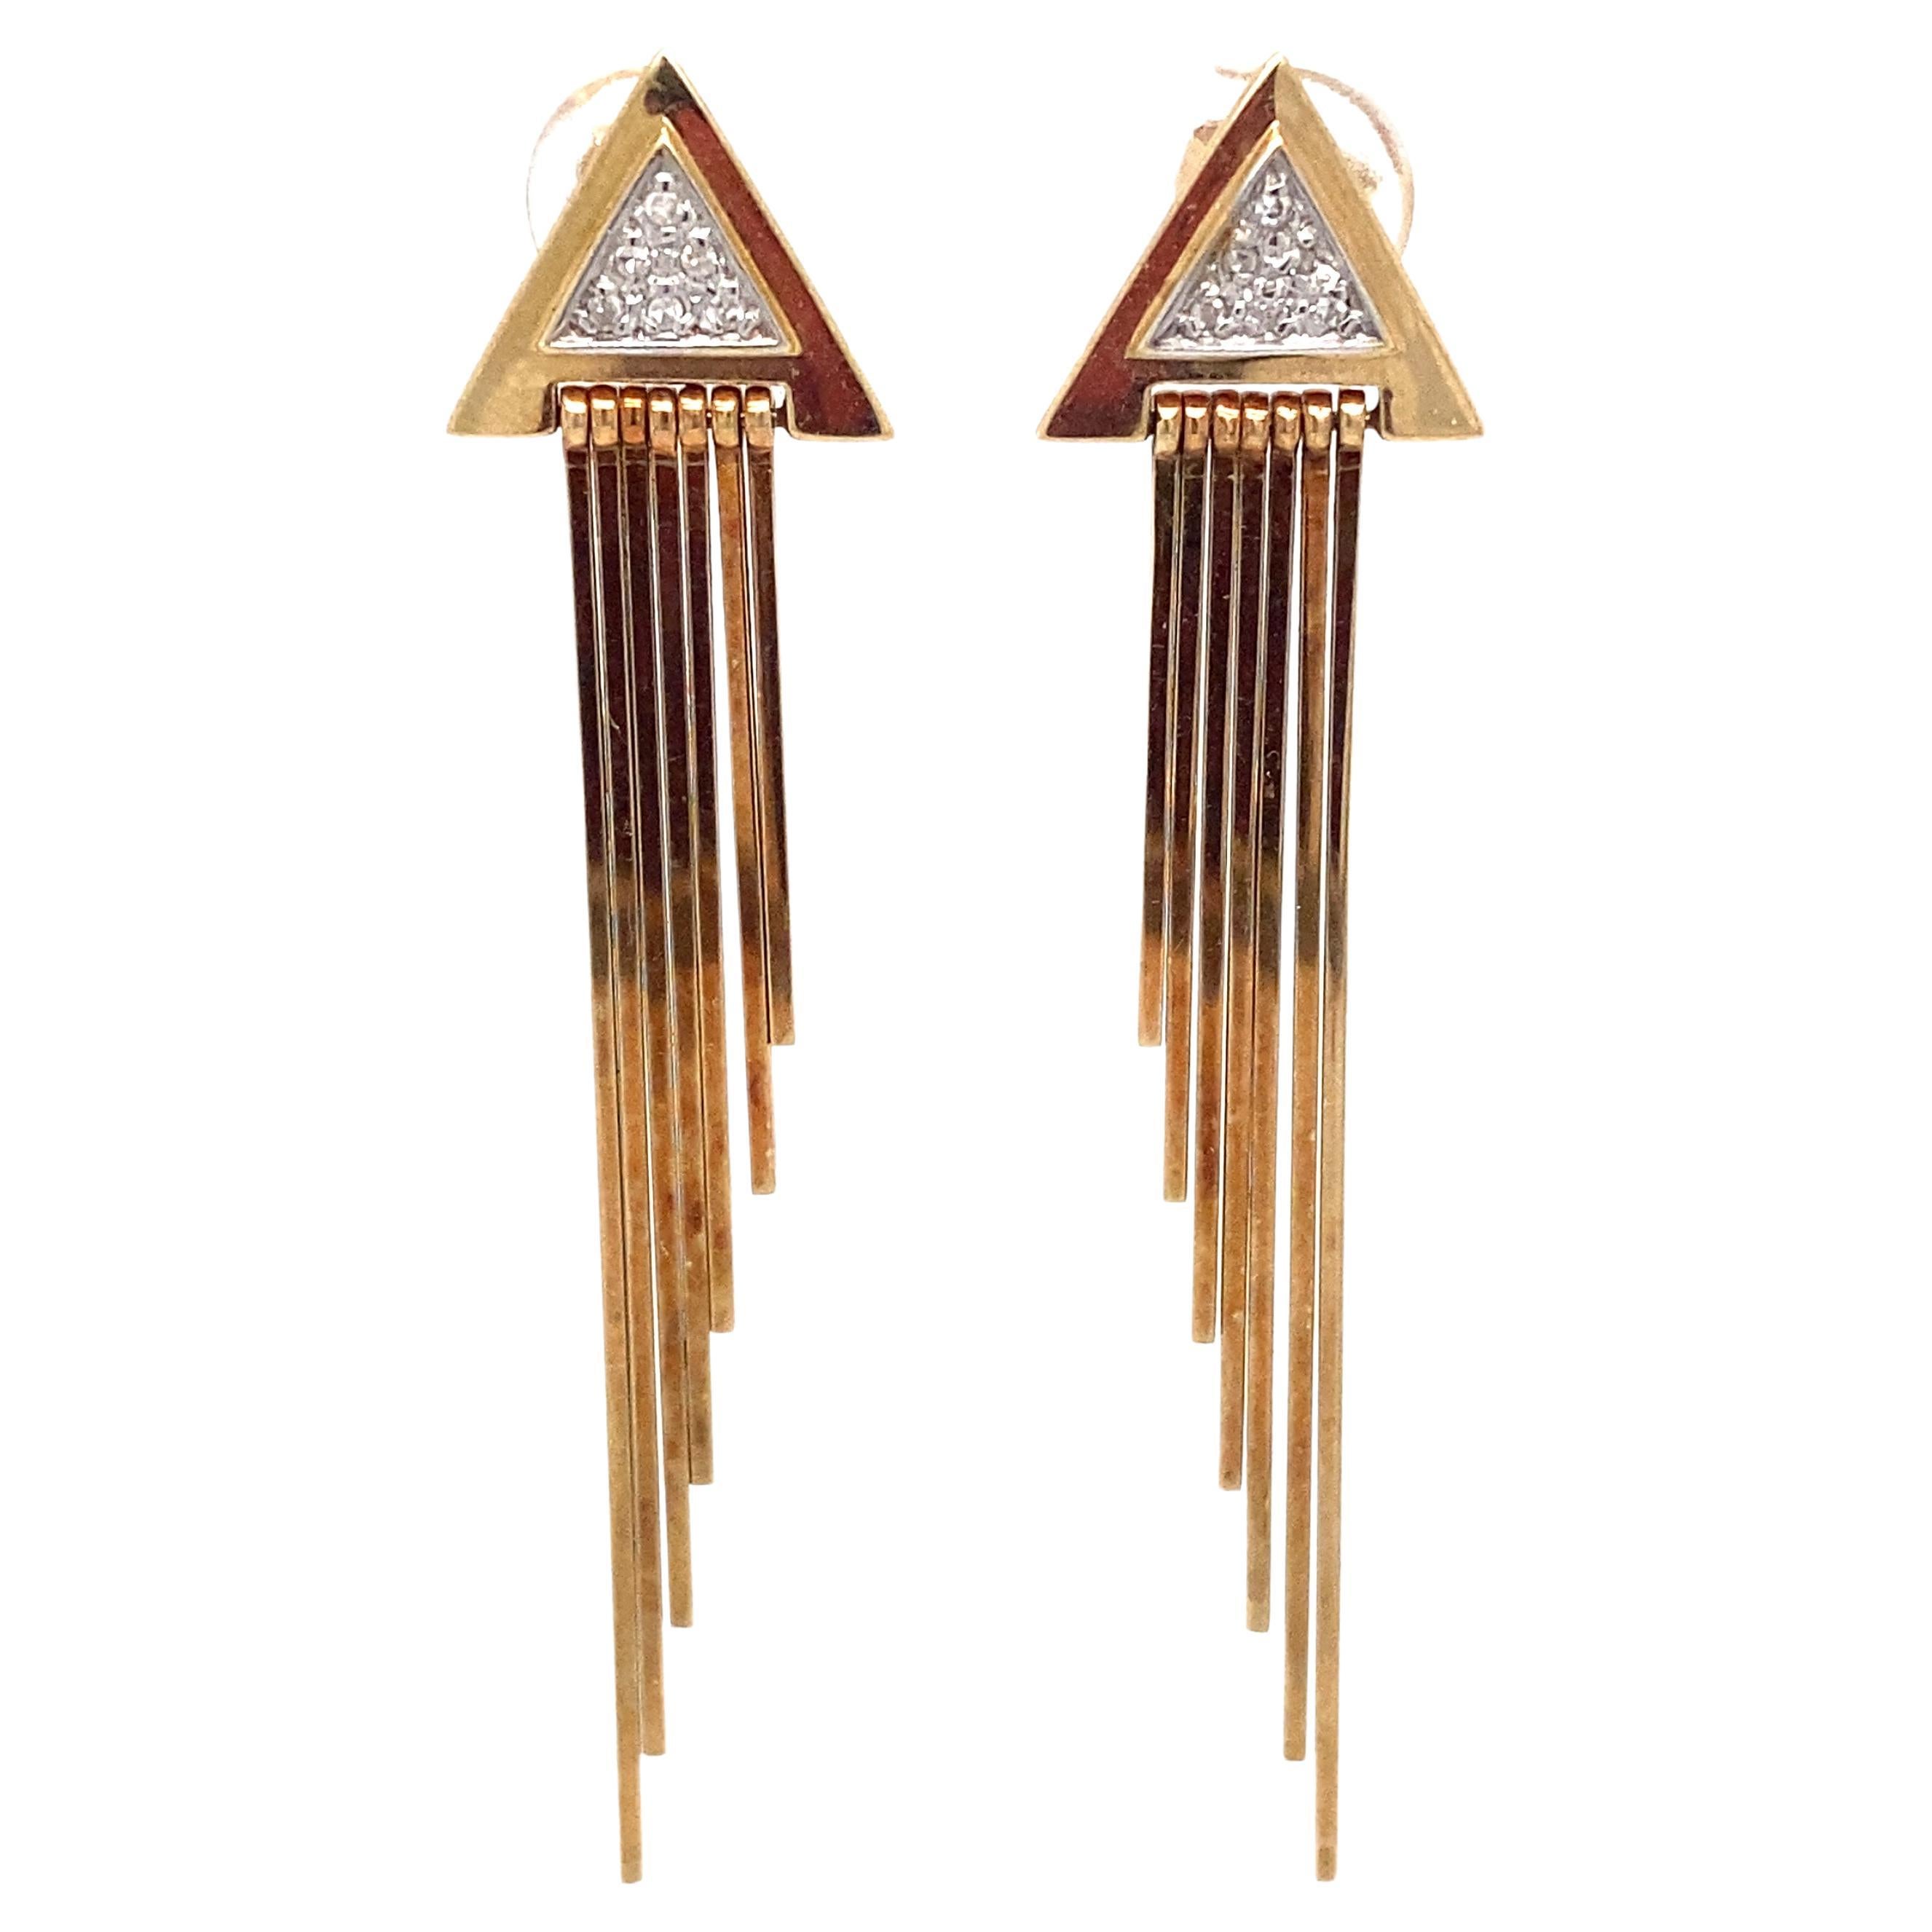 Circa 1940s 0.15 Carat Diamond Dangle Earrings in 14 Karat Yellow Gold